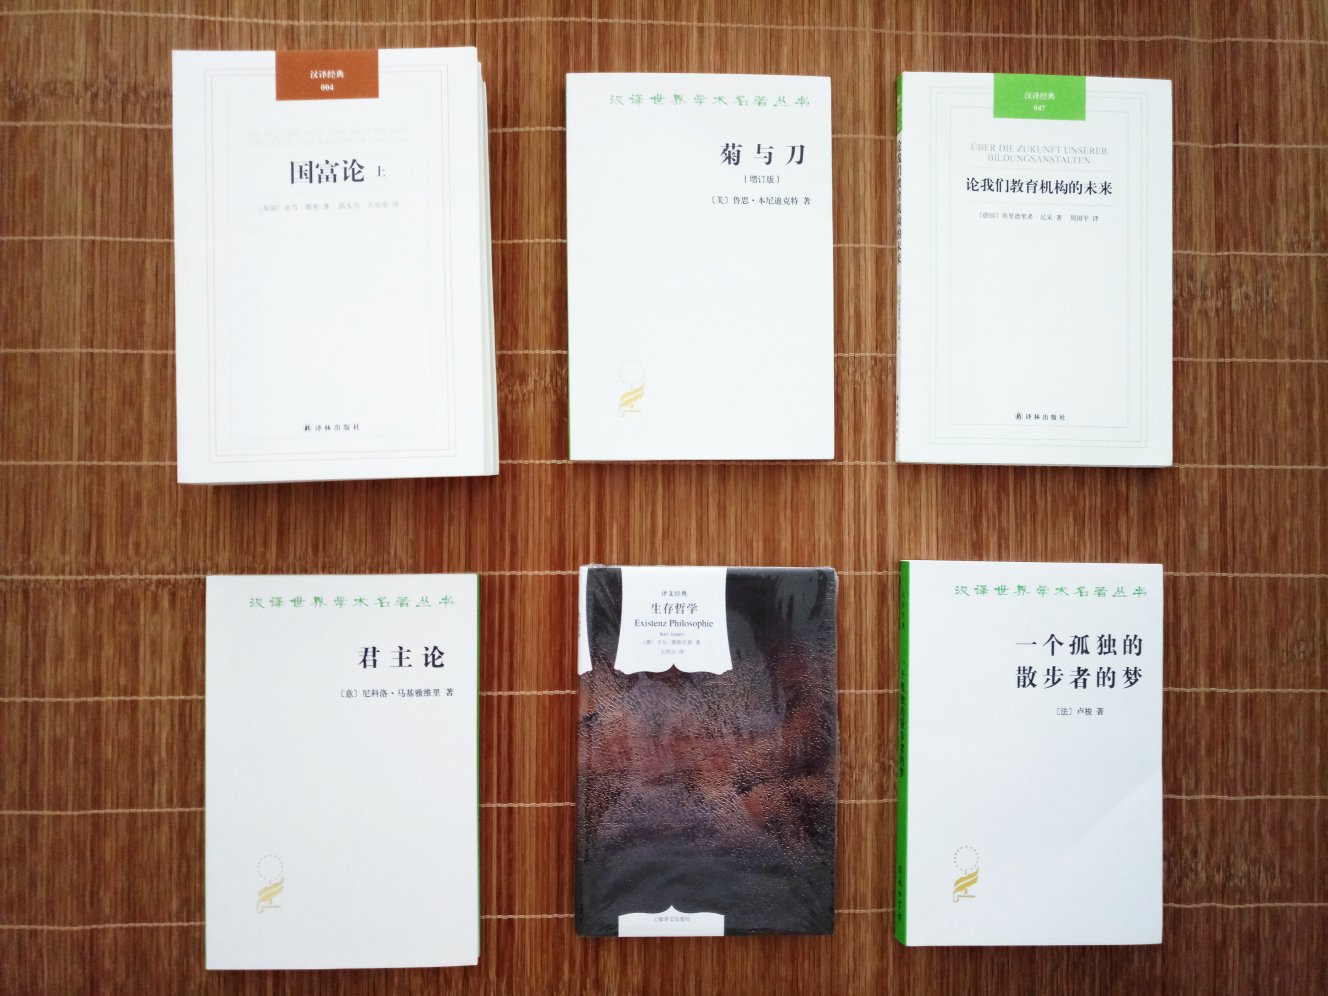 商务印书馆的汉译世界学术名著系列真是好书，物流和优惠都非常给力！